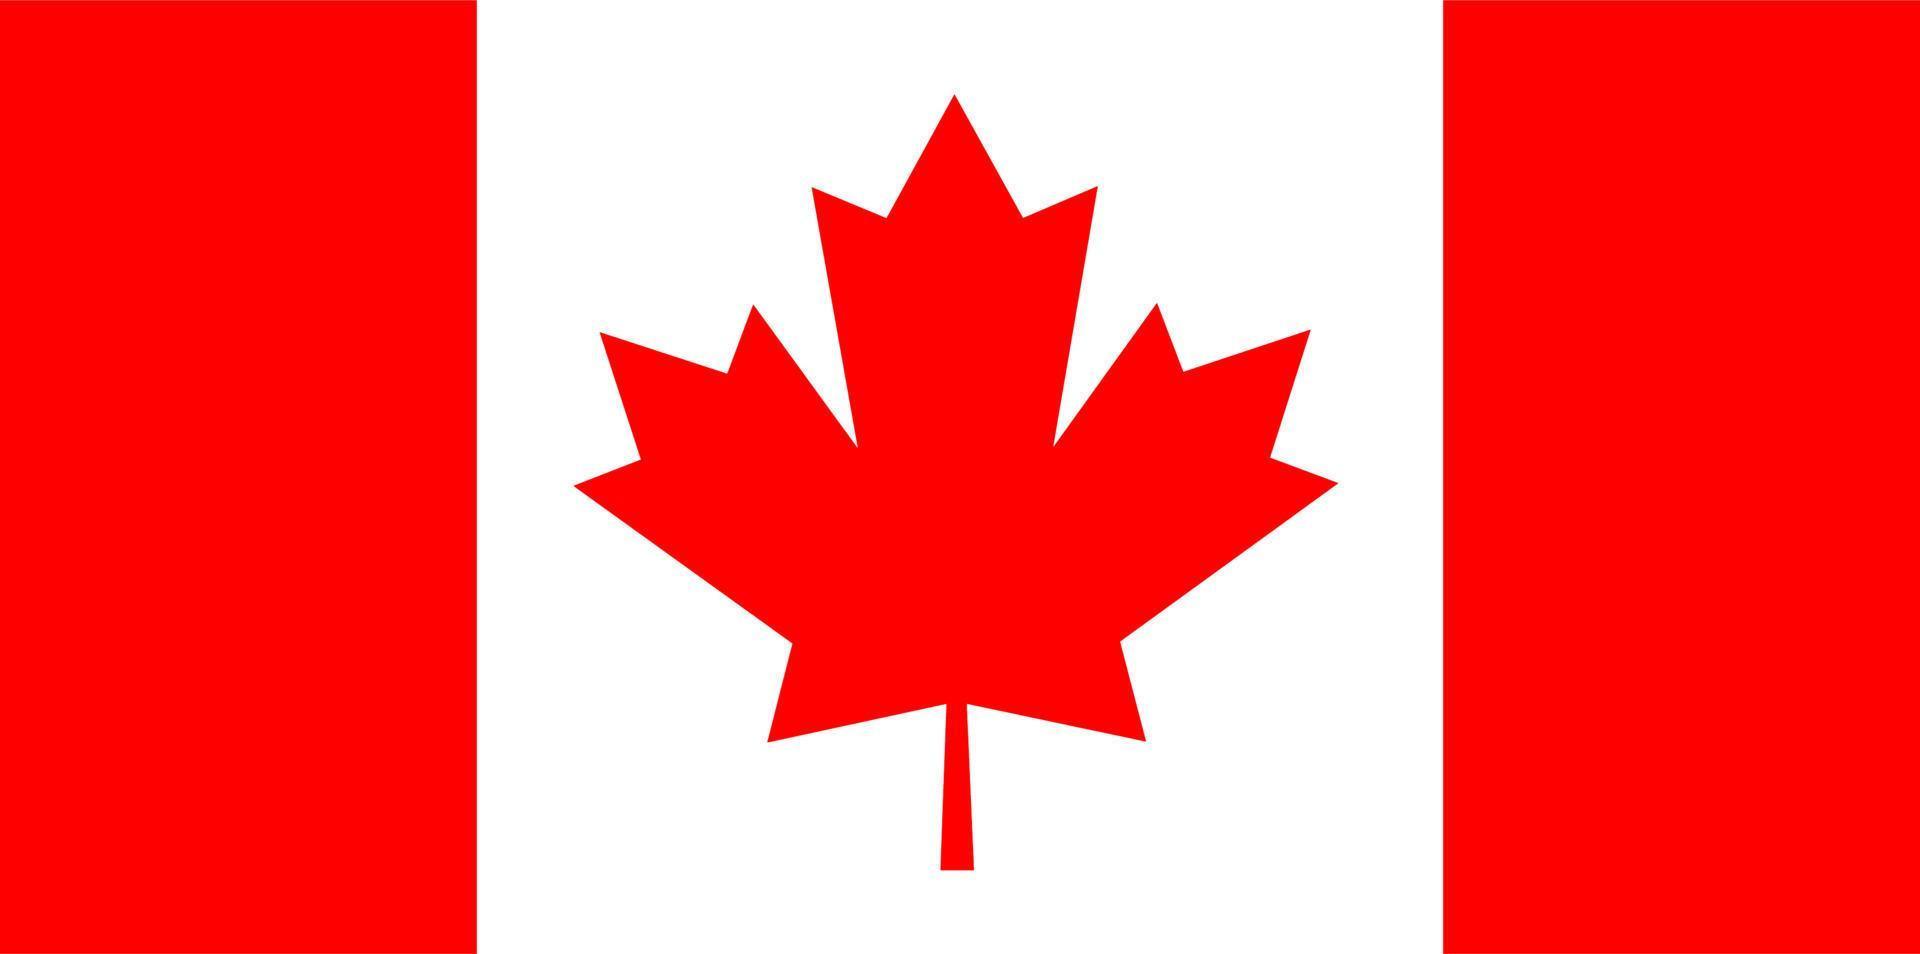 bandera nacional de canadá vector